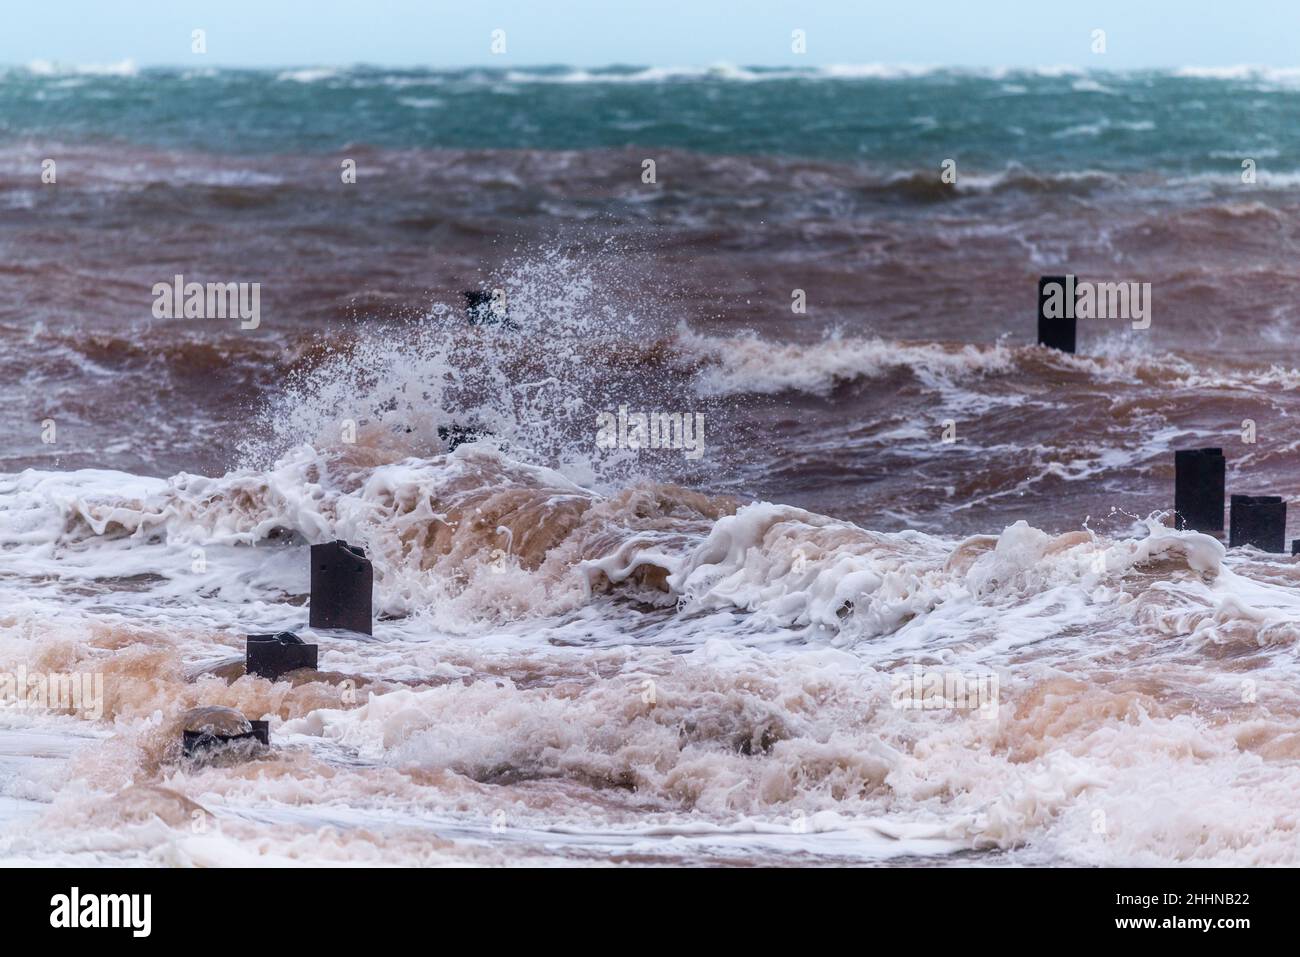 Forti tempeste invernali hi l'unica isola tedesca d'alto mare Heligoland nel Mare del Nord, Germania settentrionale, Europa centrale Foto Stock